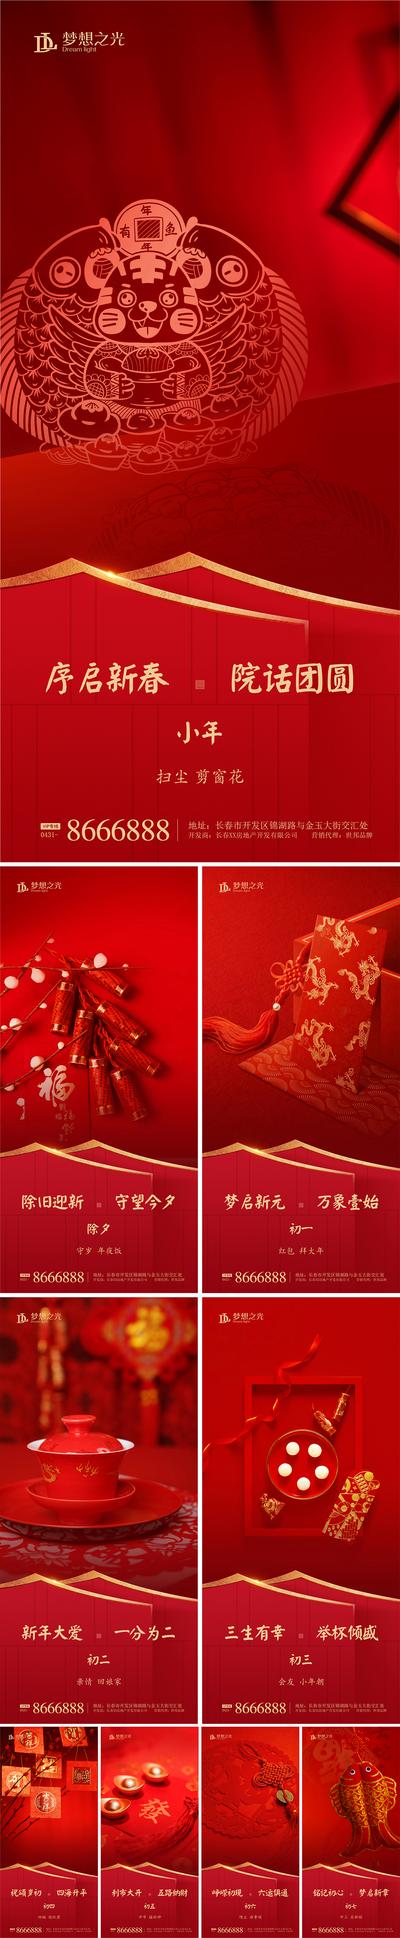 【南门网】海报 中国传统节日 房地产 除夕 窗花 爆竹 习俗 喜庆 系列